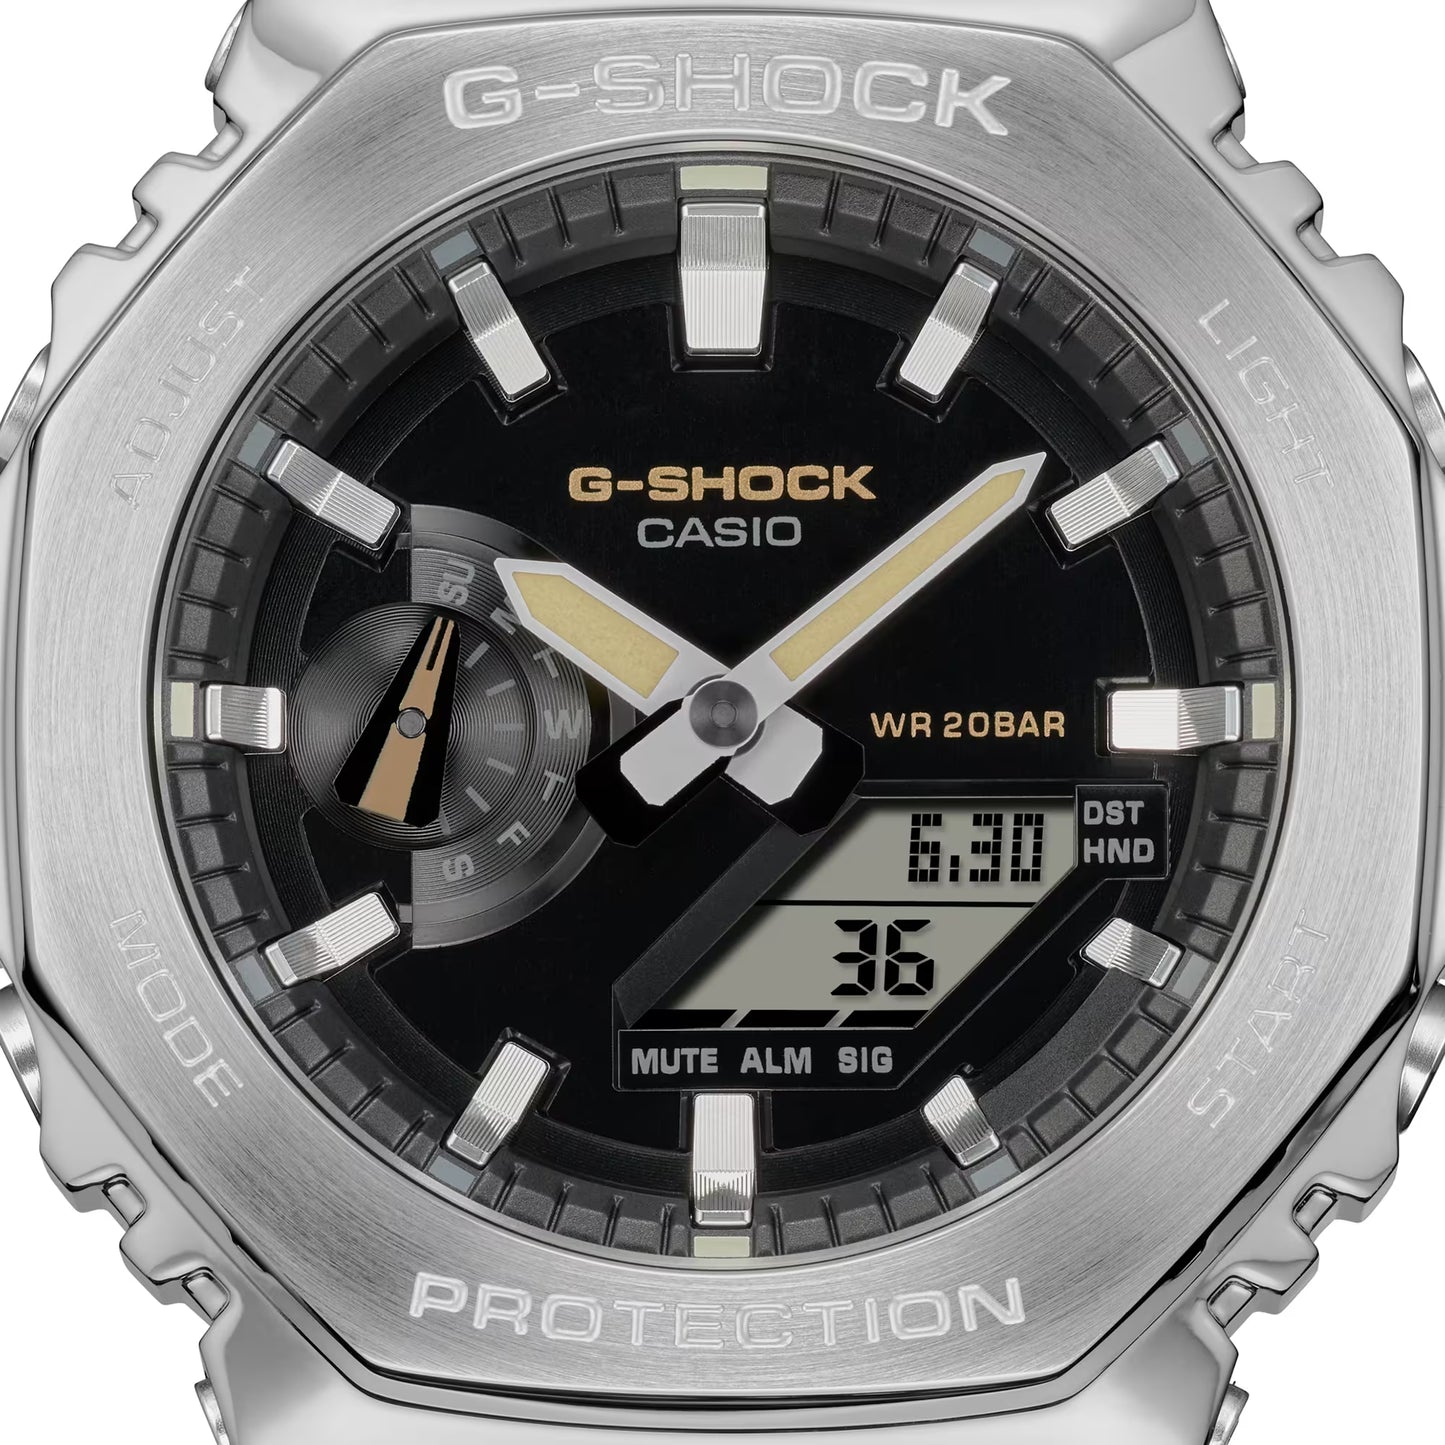 CASIO G-SHOCK GM-2100C-5A FABRIC BAND STEEL BEZEL "CASIOAK" A/D WATCH